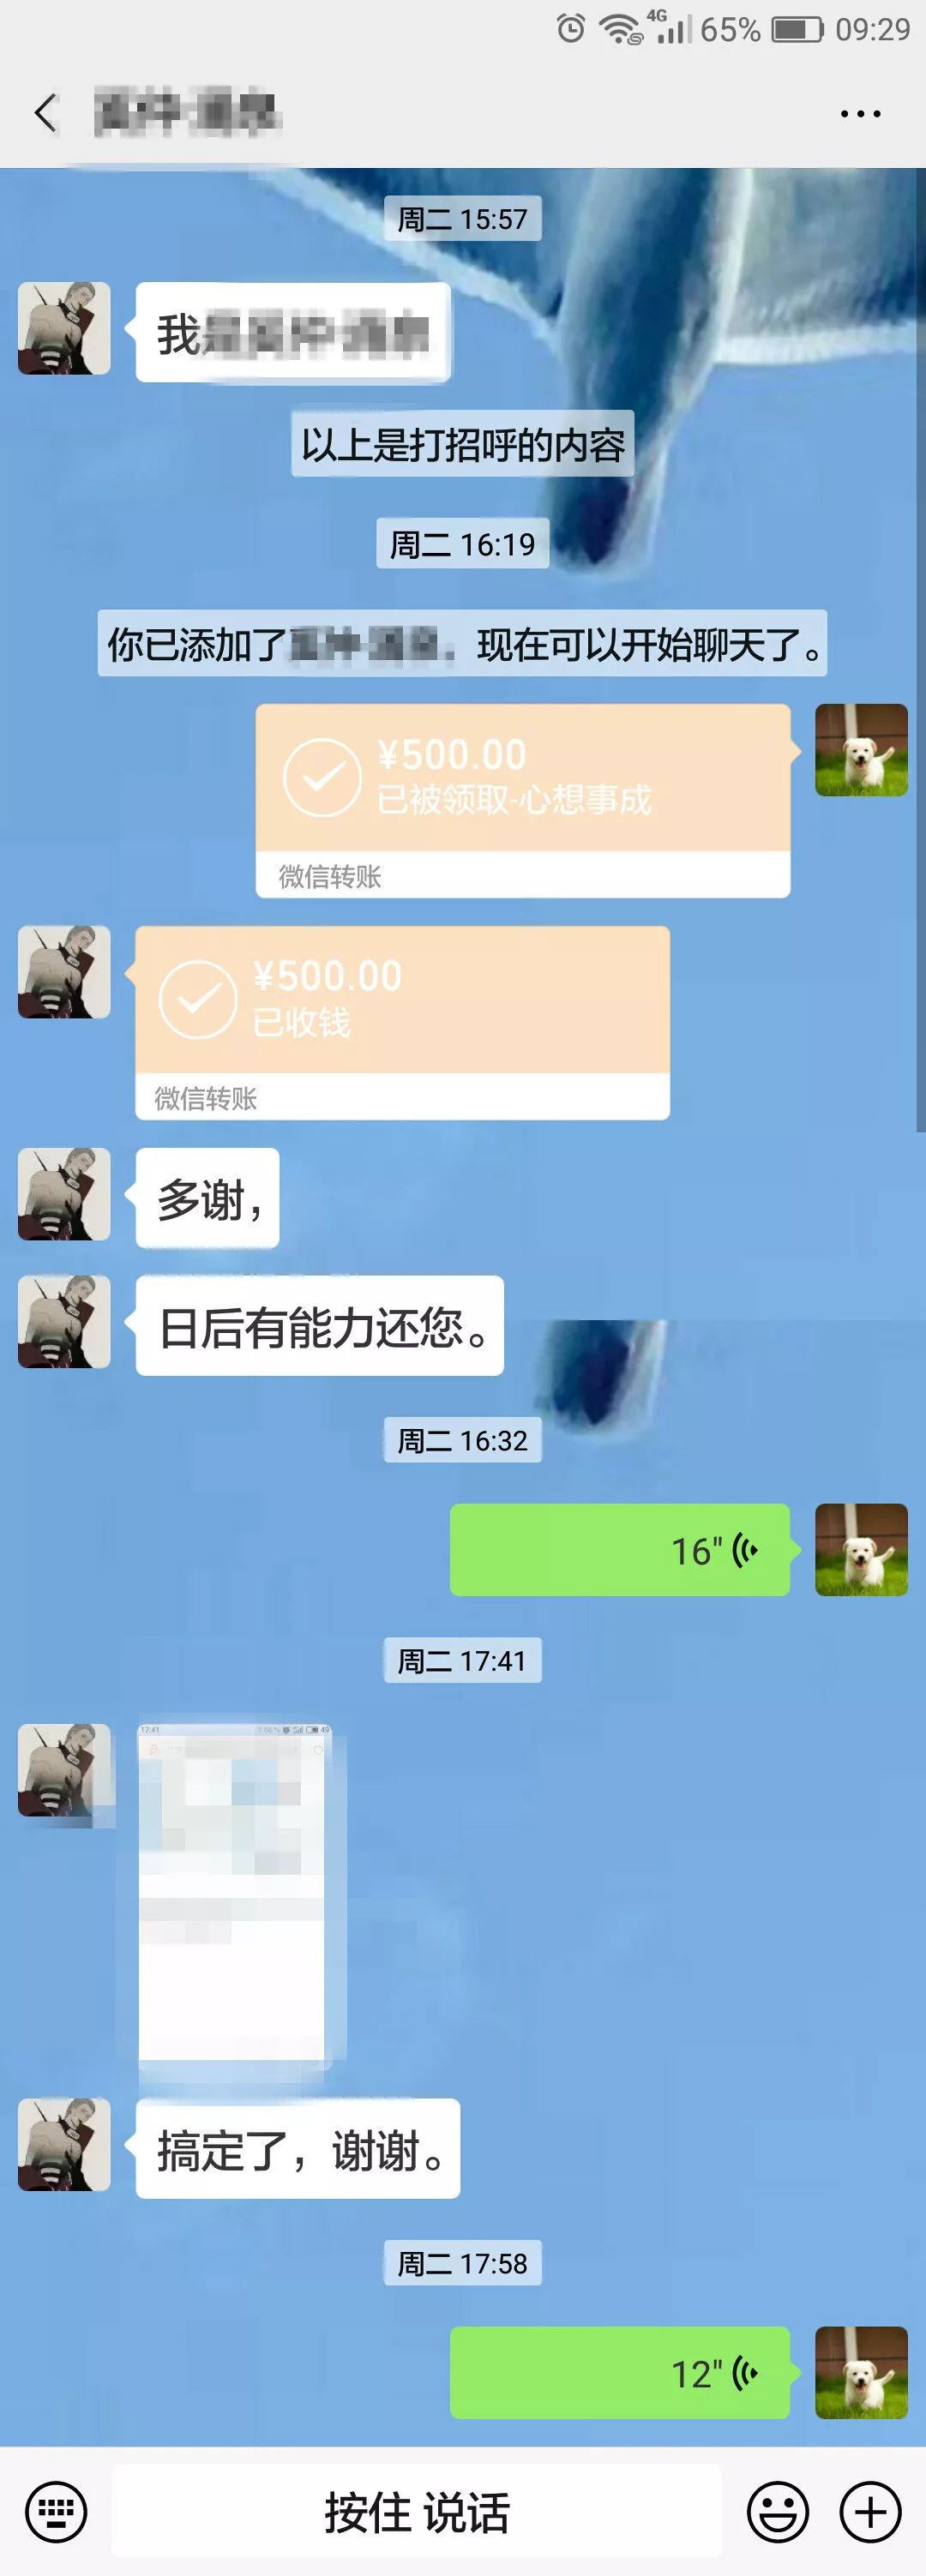 张颂欢当机立断,添加小权微信并转账500元,让其直接打车去招生办.